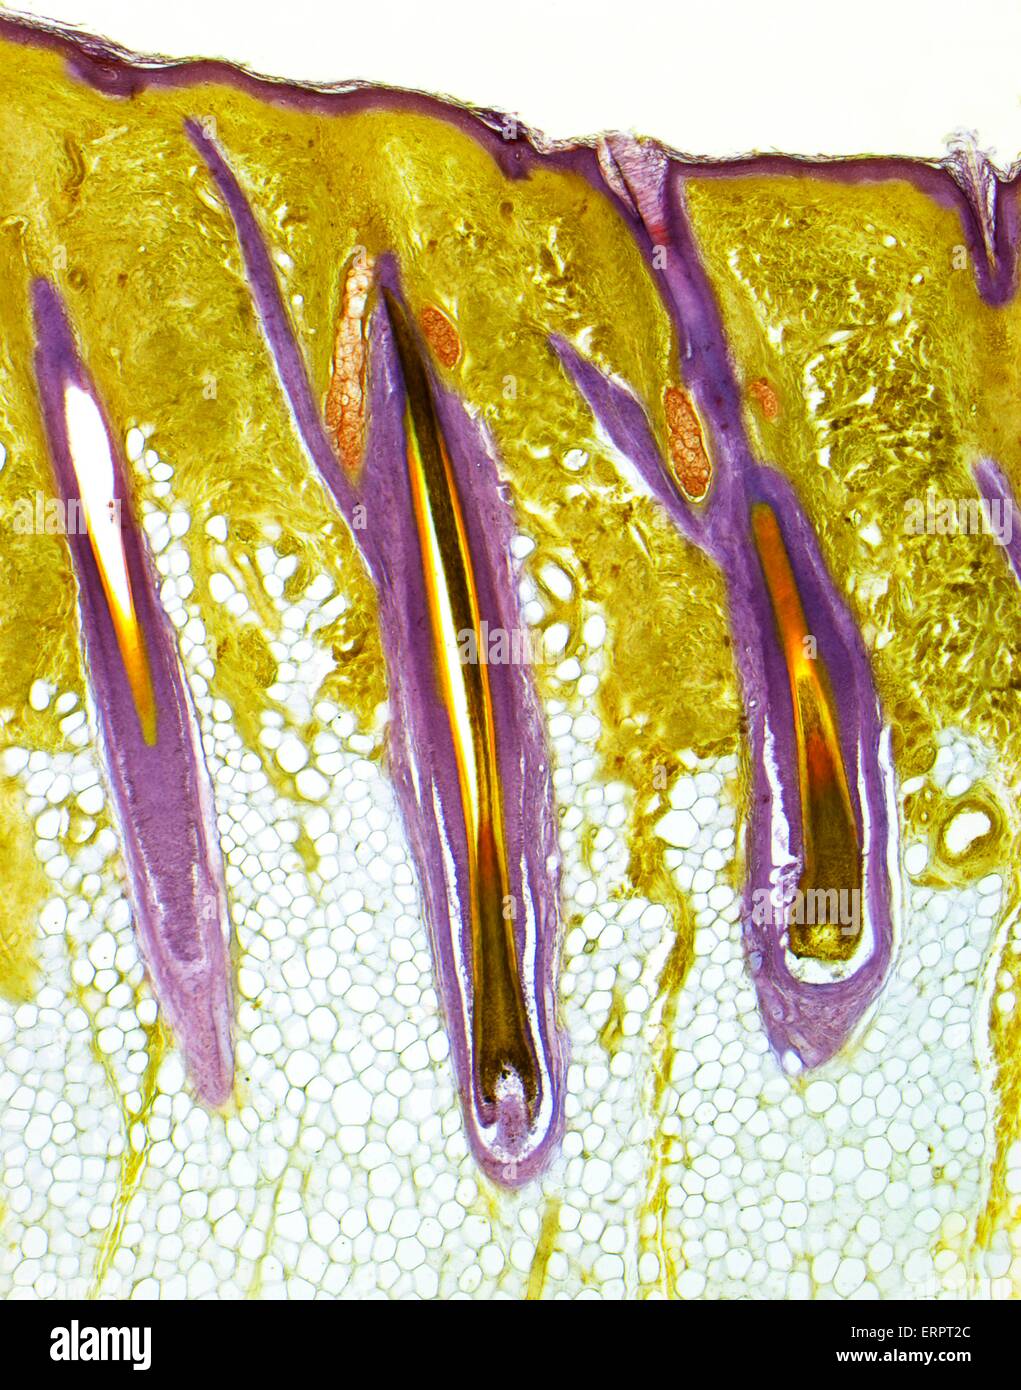 Behaarte Haut. Leichte Schliffbild eines dicken Abschnitts der menschlichen Haut, zeigen drei zentrale Haarfollikel. Die äußere Schicht der Haut, die Epidermis ist die dünne, lila Band, unterstützt durch die tiefere, gelb, Dermis. Darunter ist die subkutane Schicht der Verbindung Stockfoto